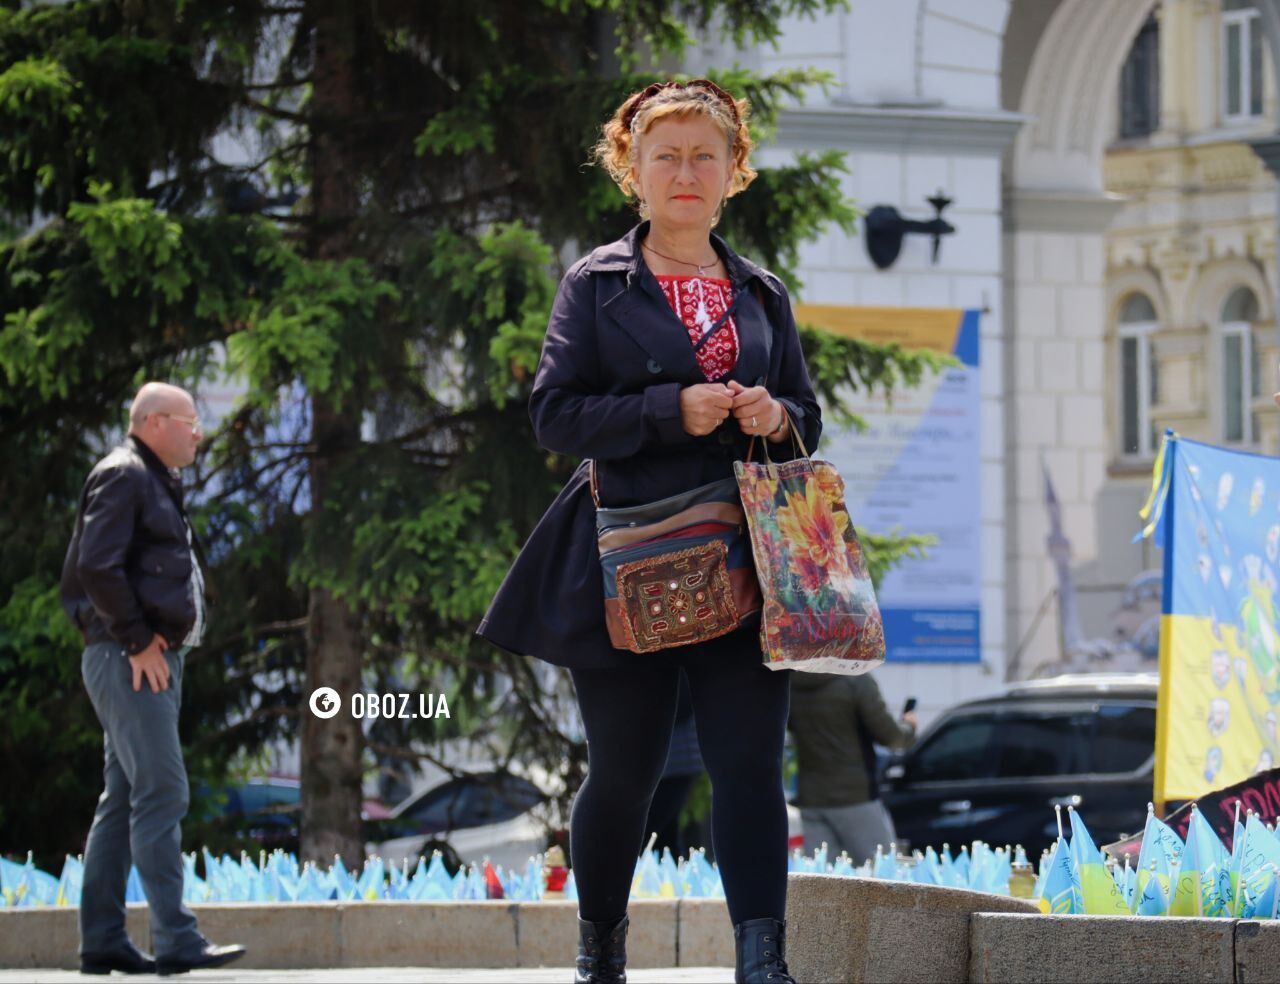 Важная составляющая самоидентичности: улицы Киева заполонили украинцы в вышиванках. Фоторепортаж